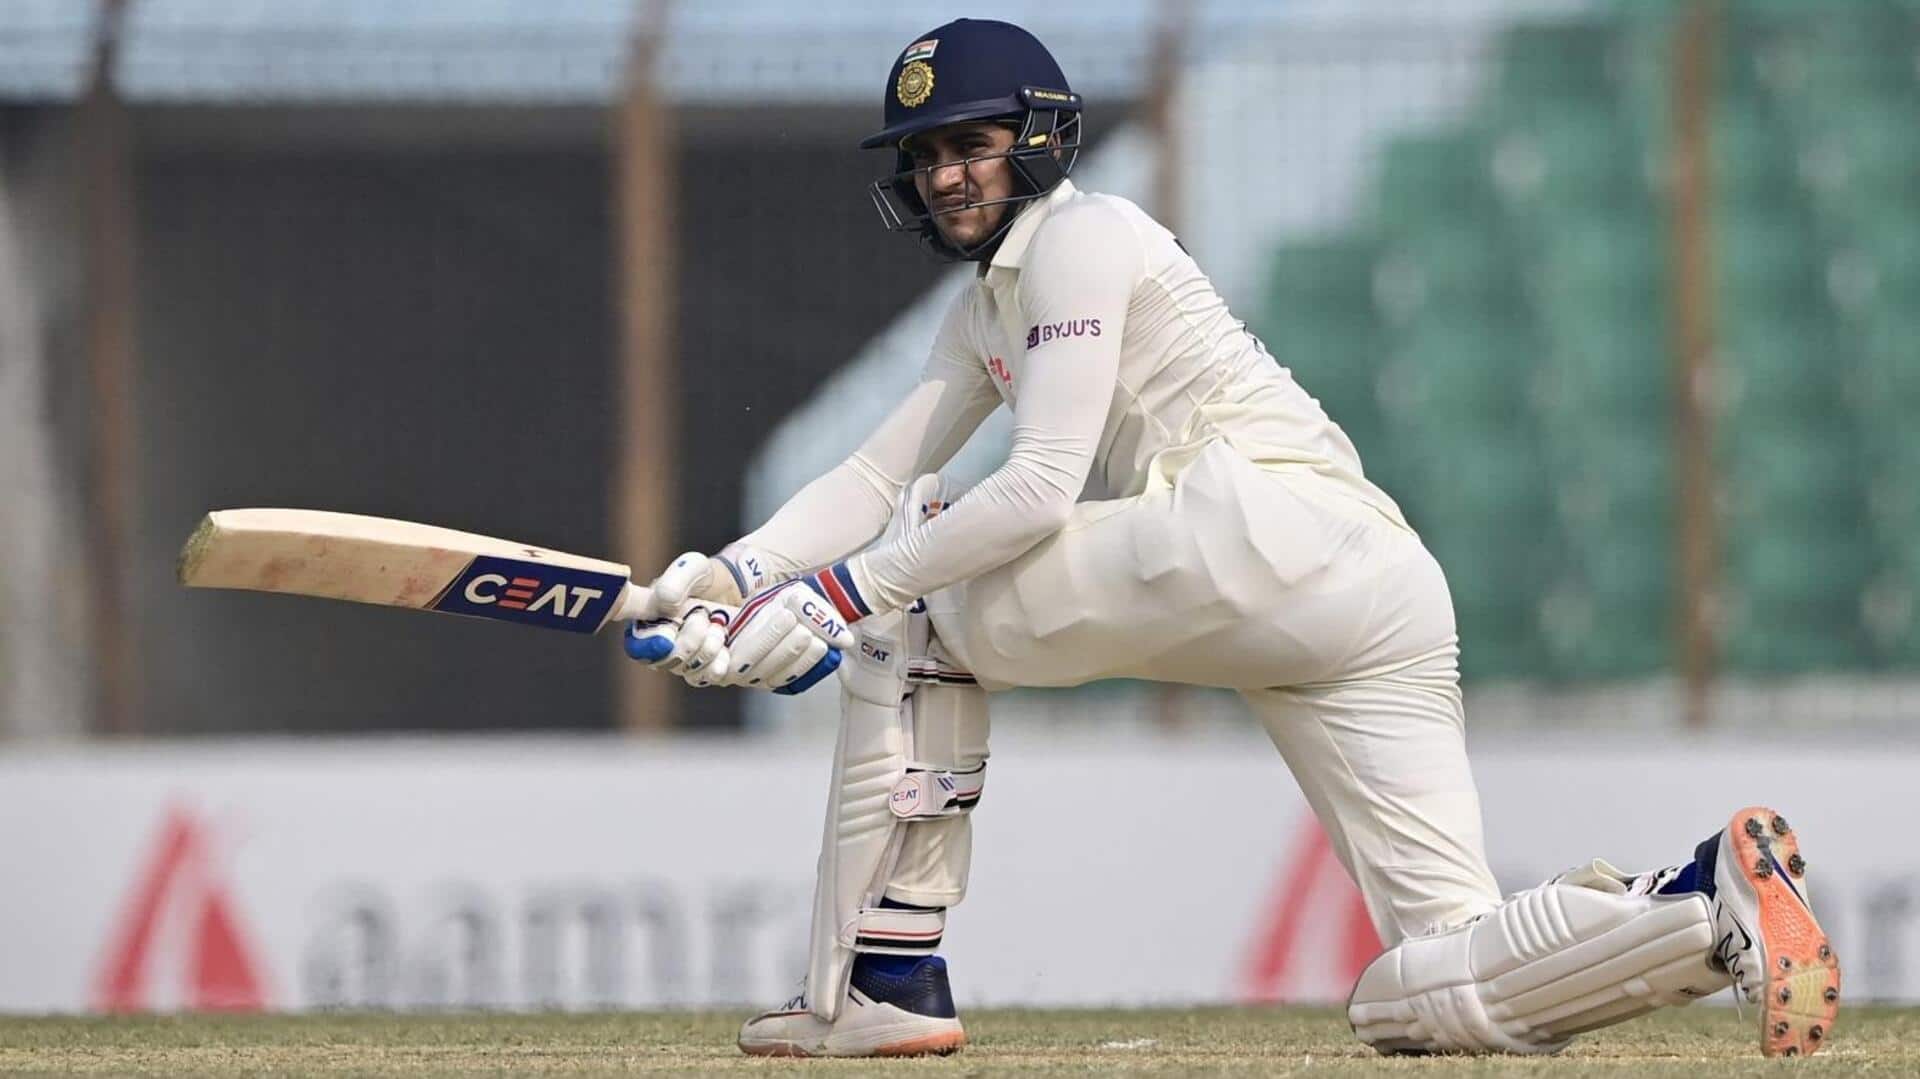 टेस्ट क्रिकेट: शुभमन गिल की खराब फॉर्म जारी, पिछली 10 पारियों में नहीं लगा पाए अर्धशतक 